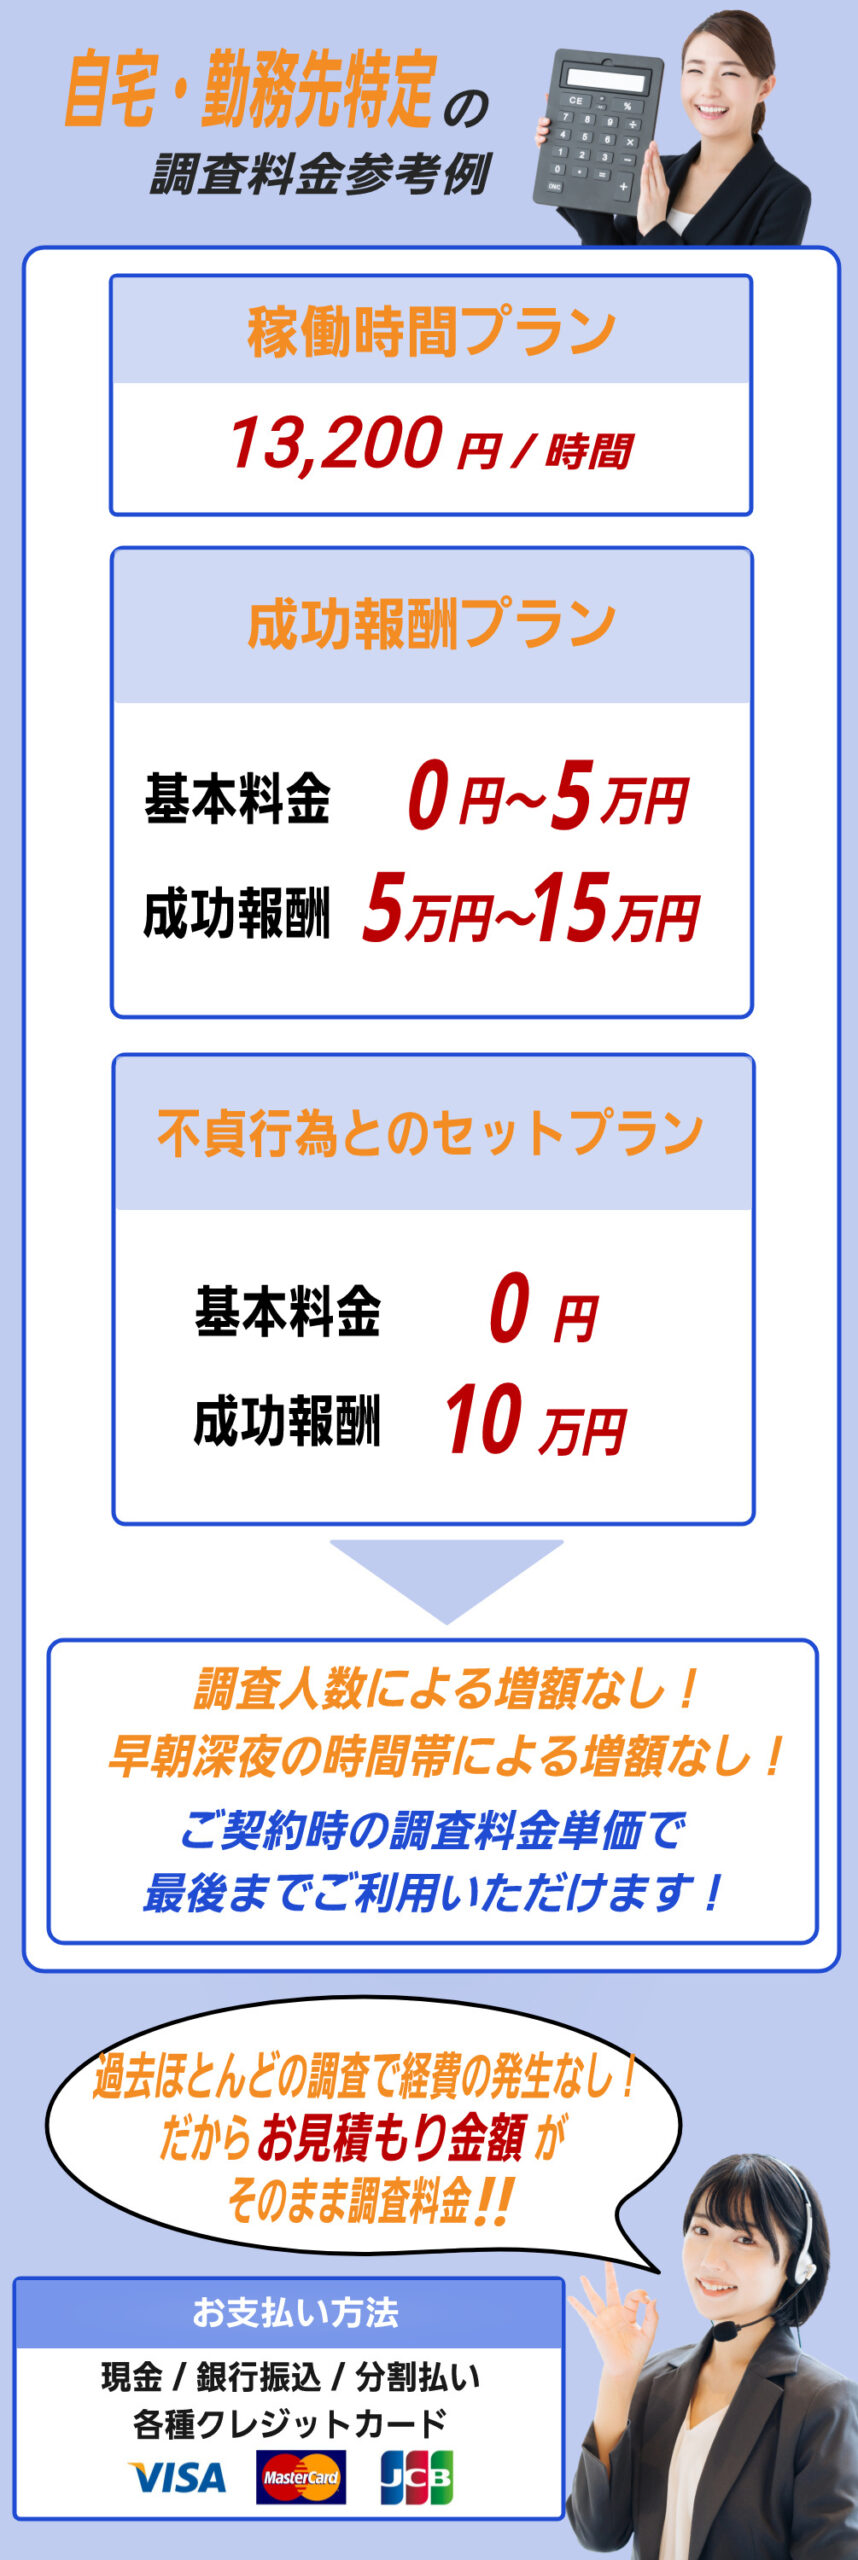 名古屋市や愛知県での自宅特定勤務先特定の調査料金